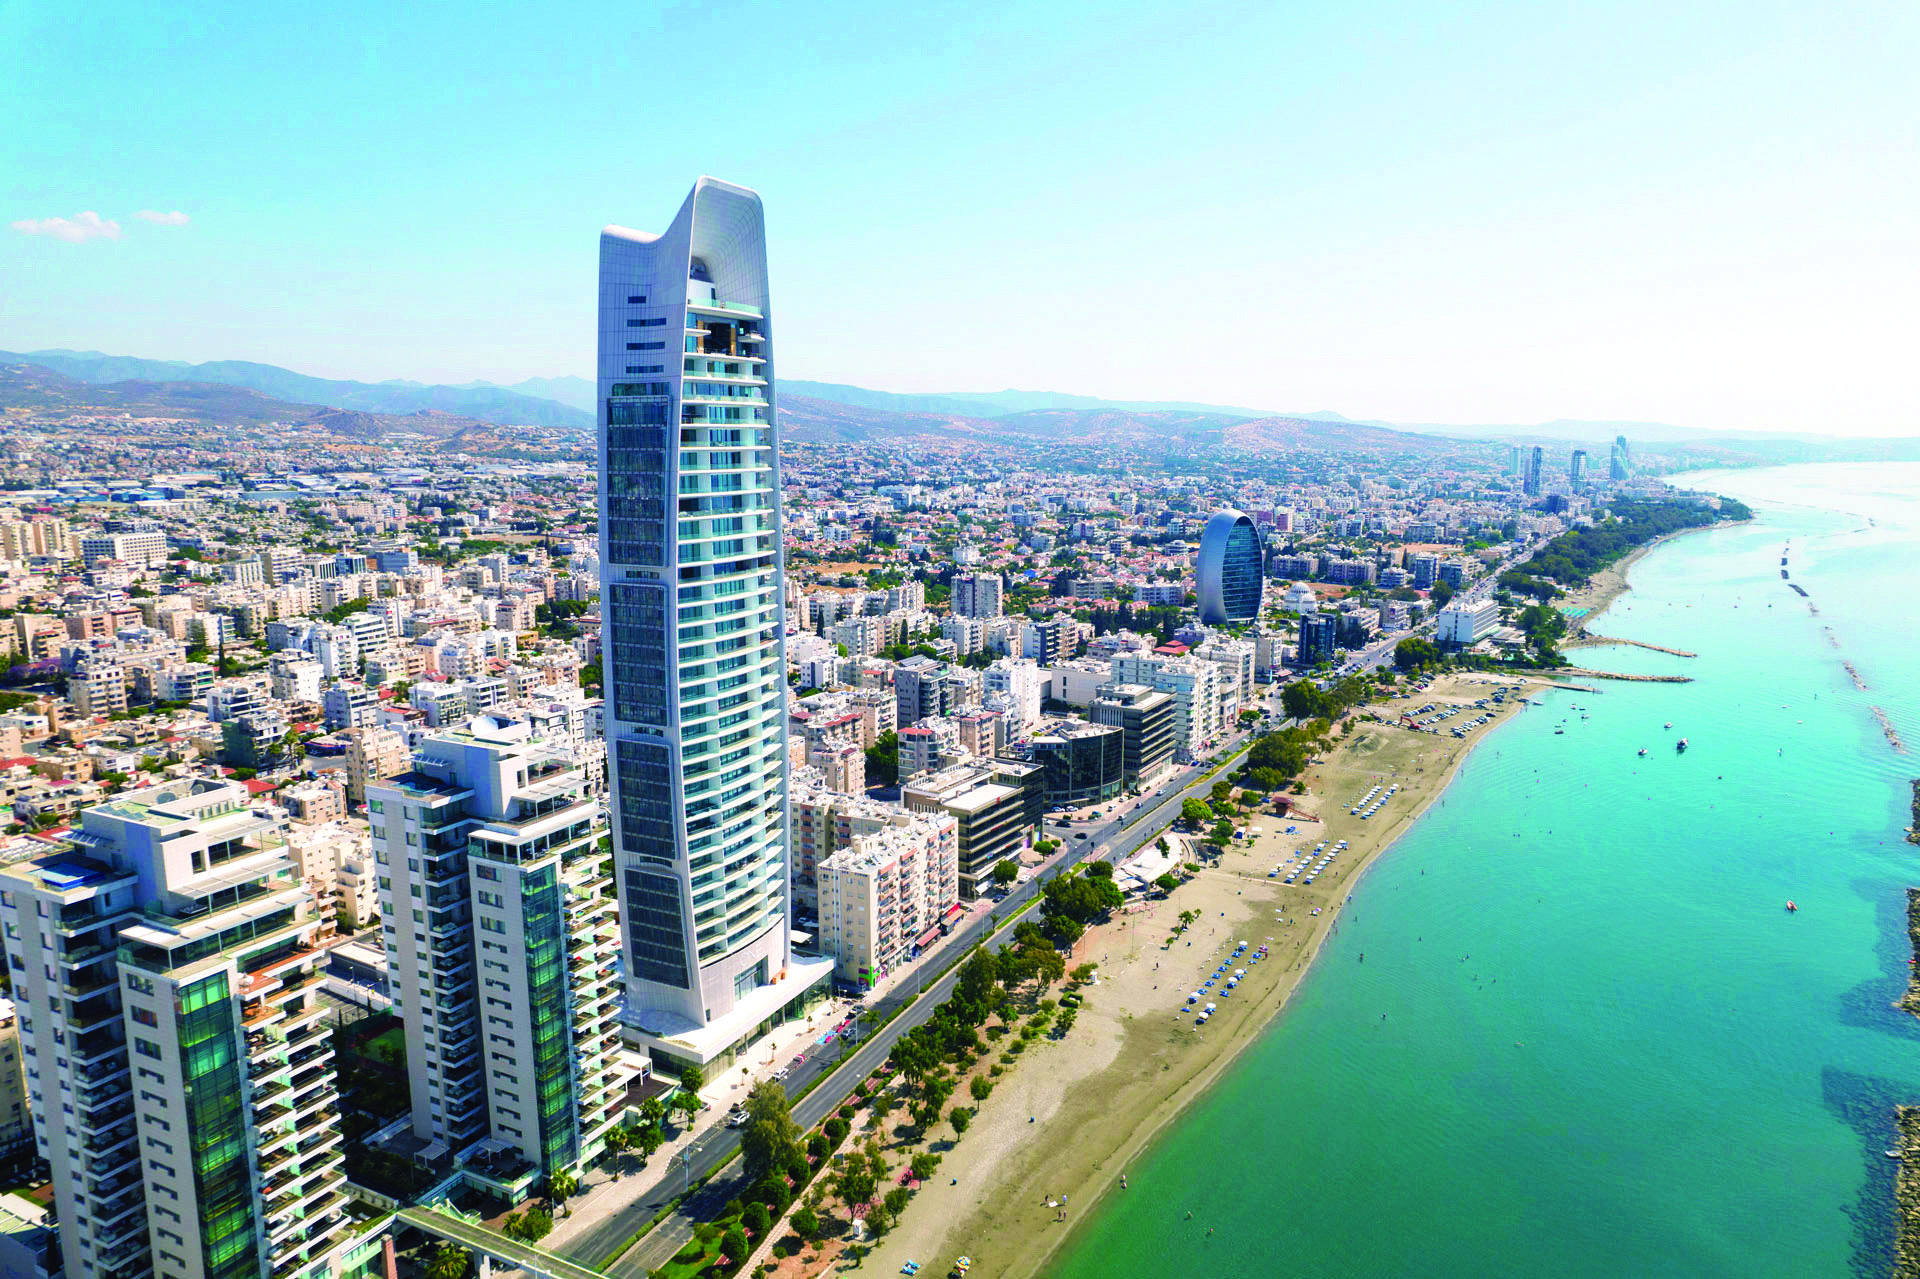 Tallest Residential Seaside Tower